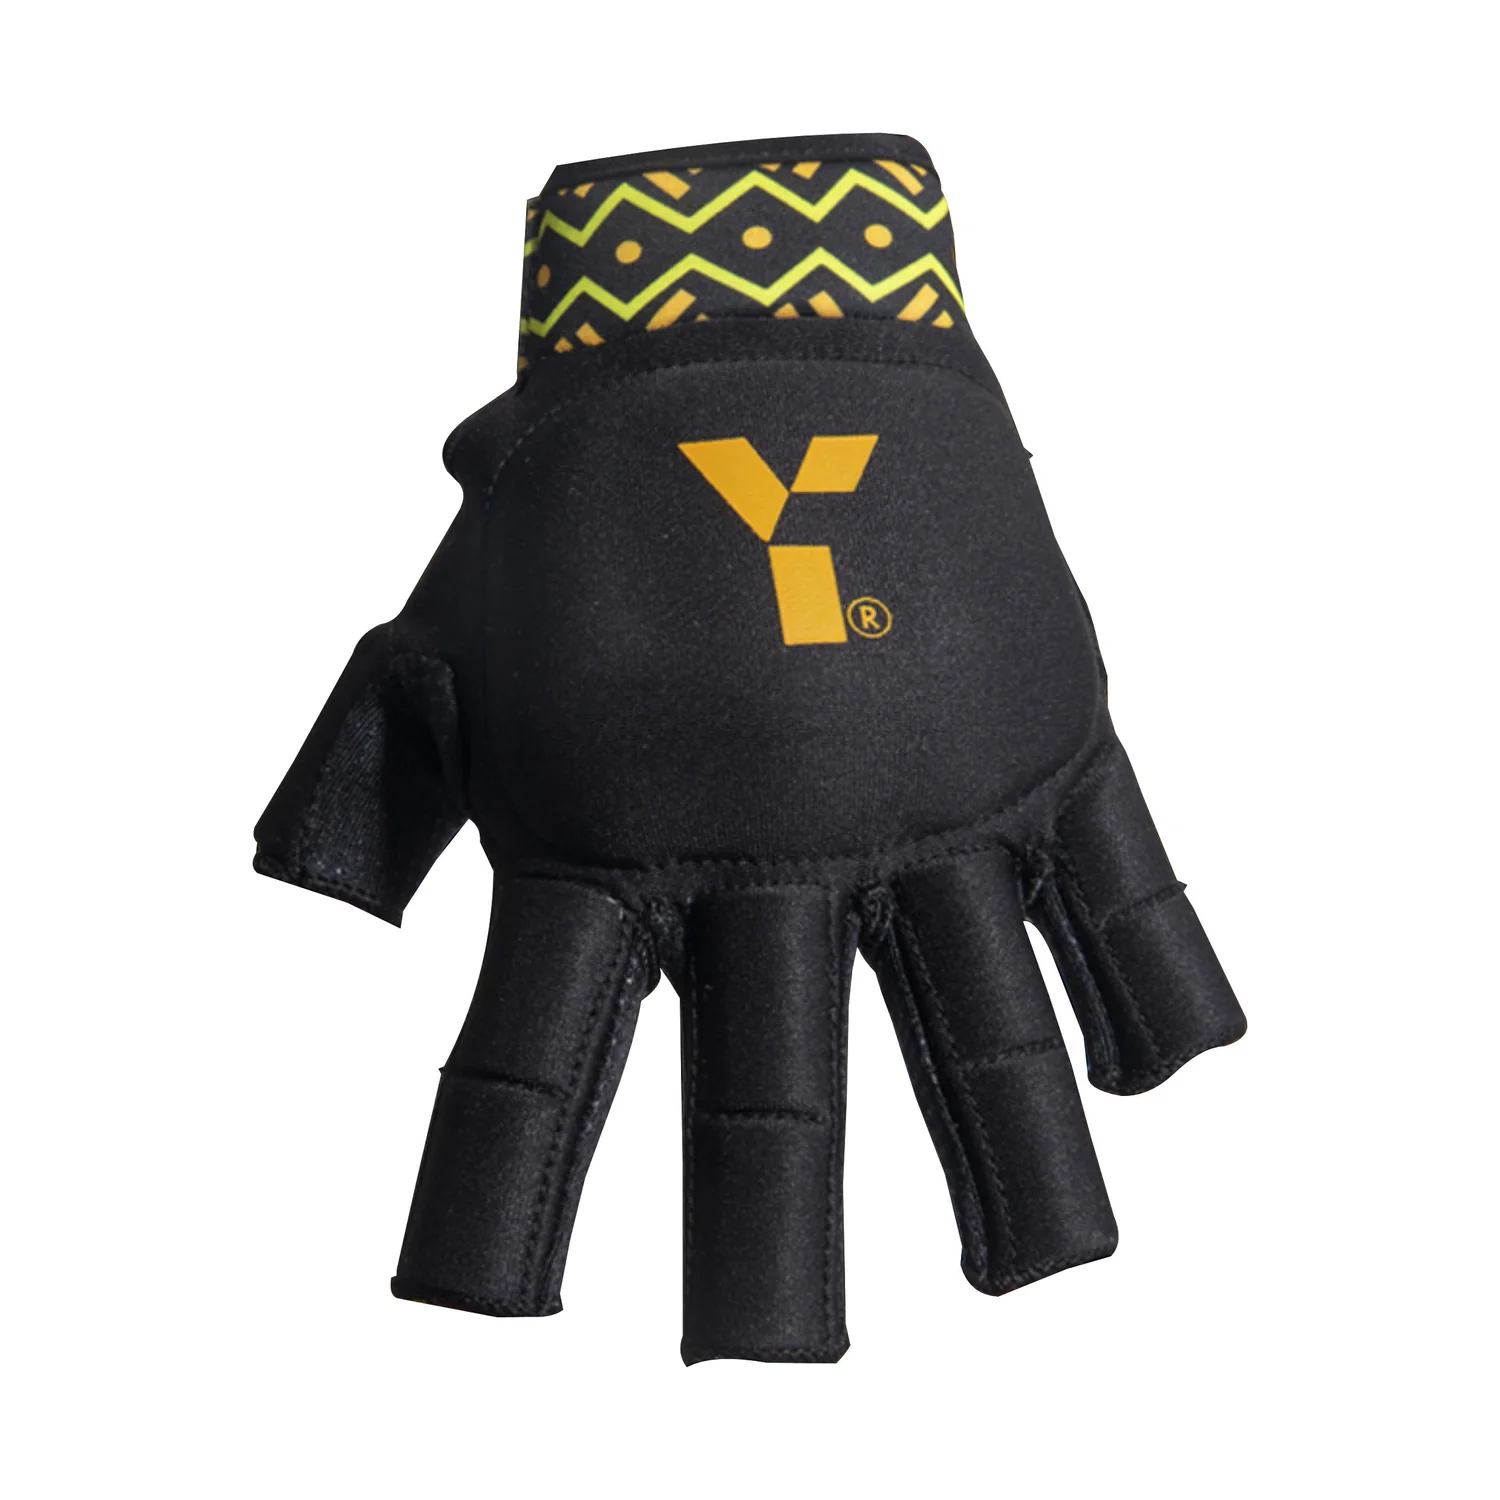 Y1 - MK8 Glove